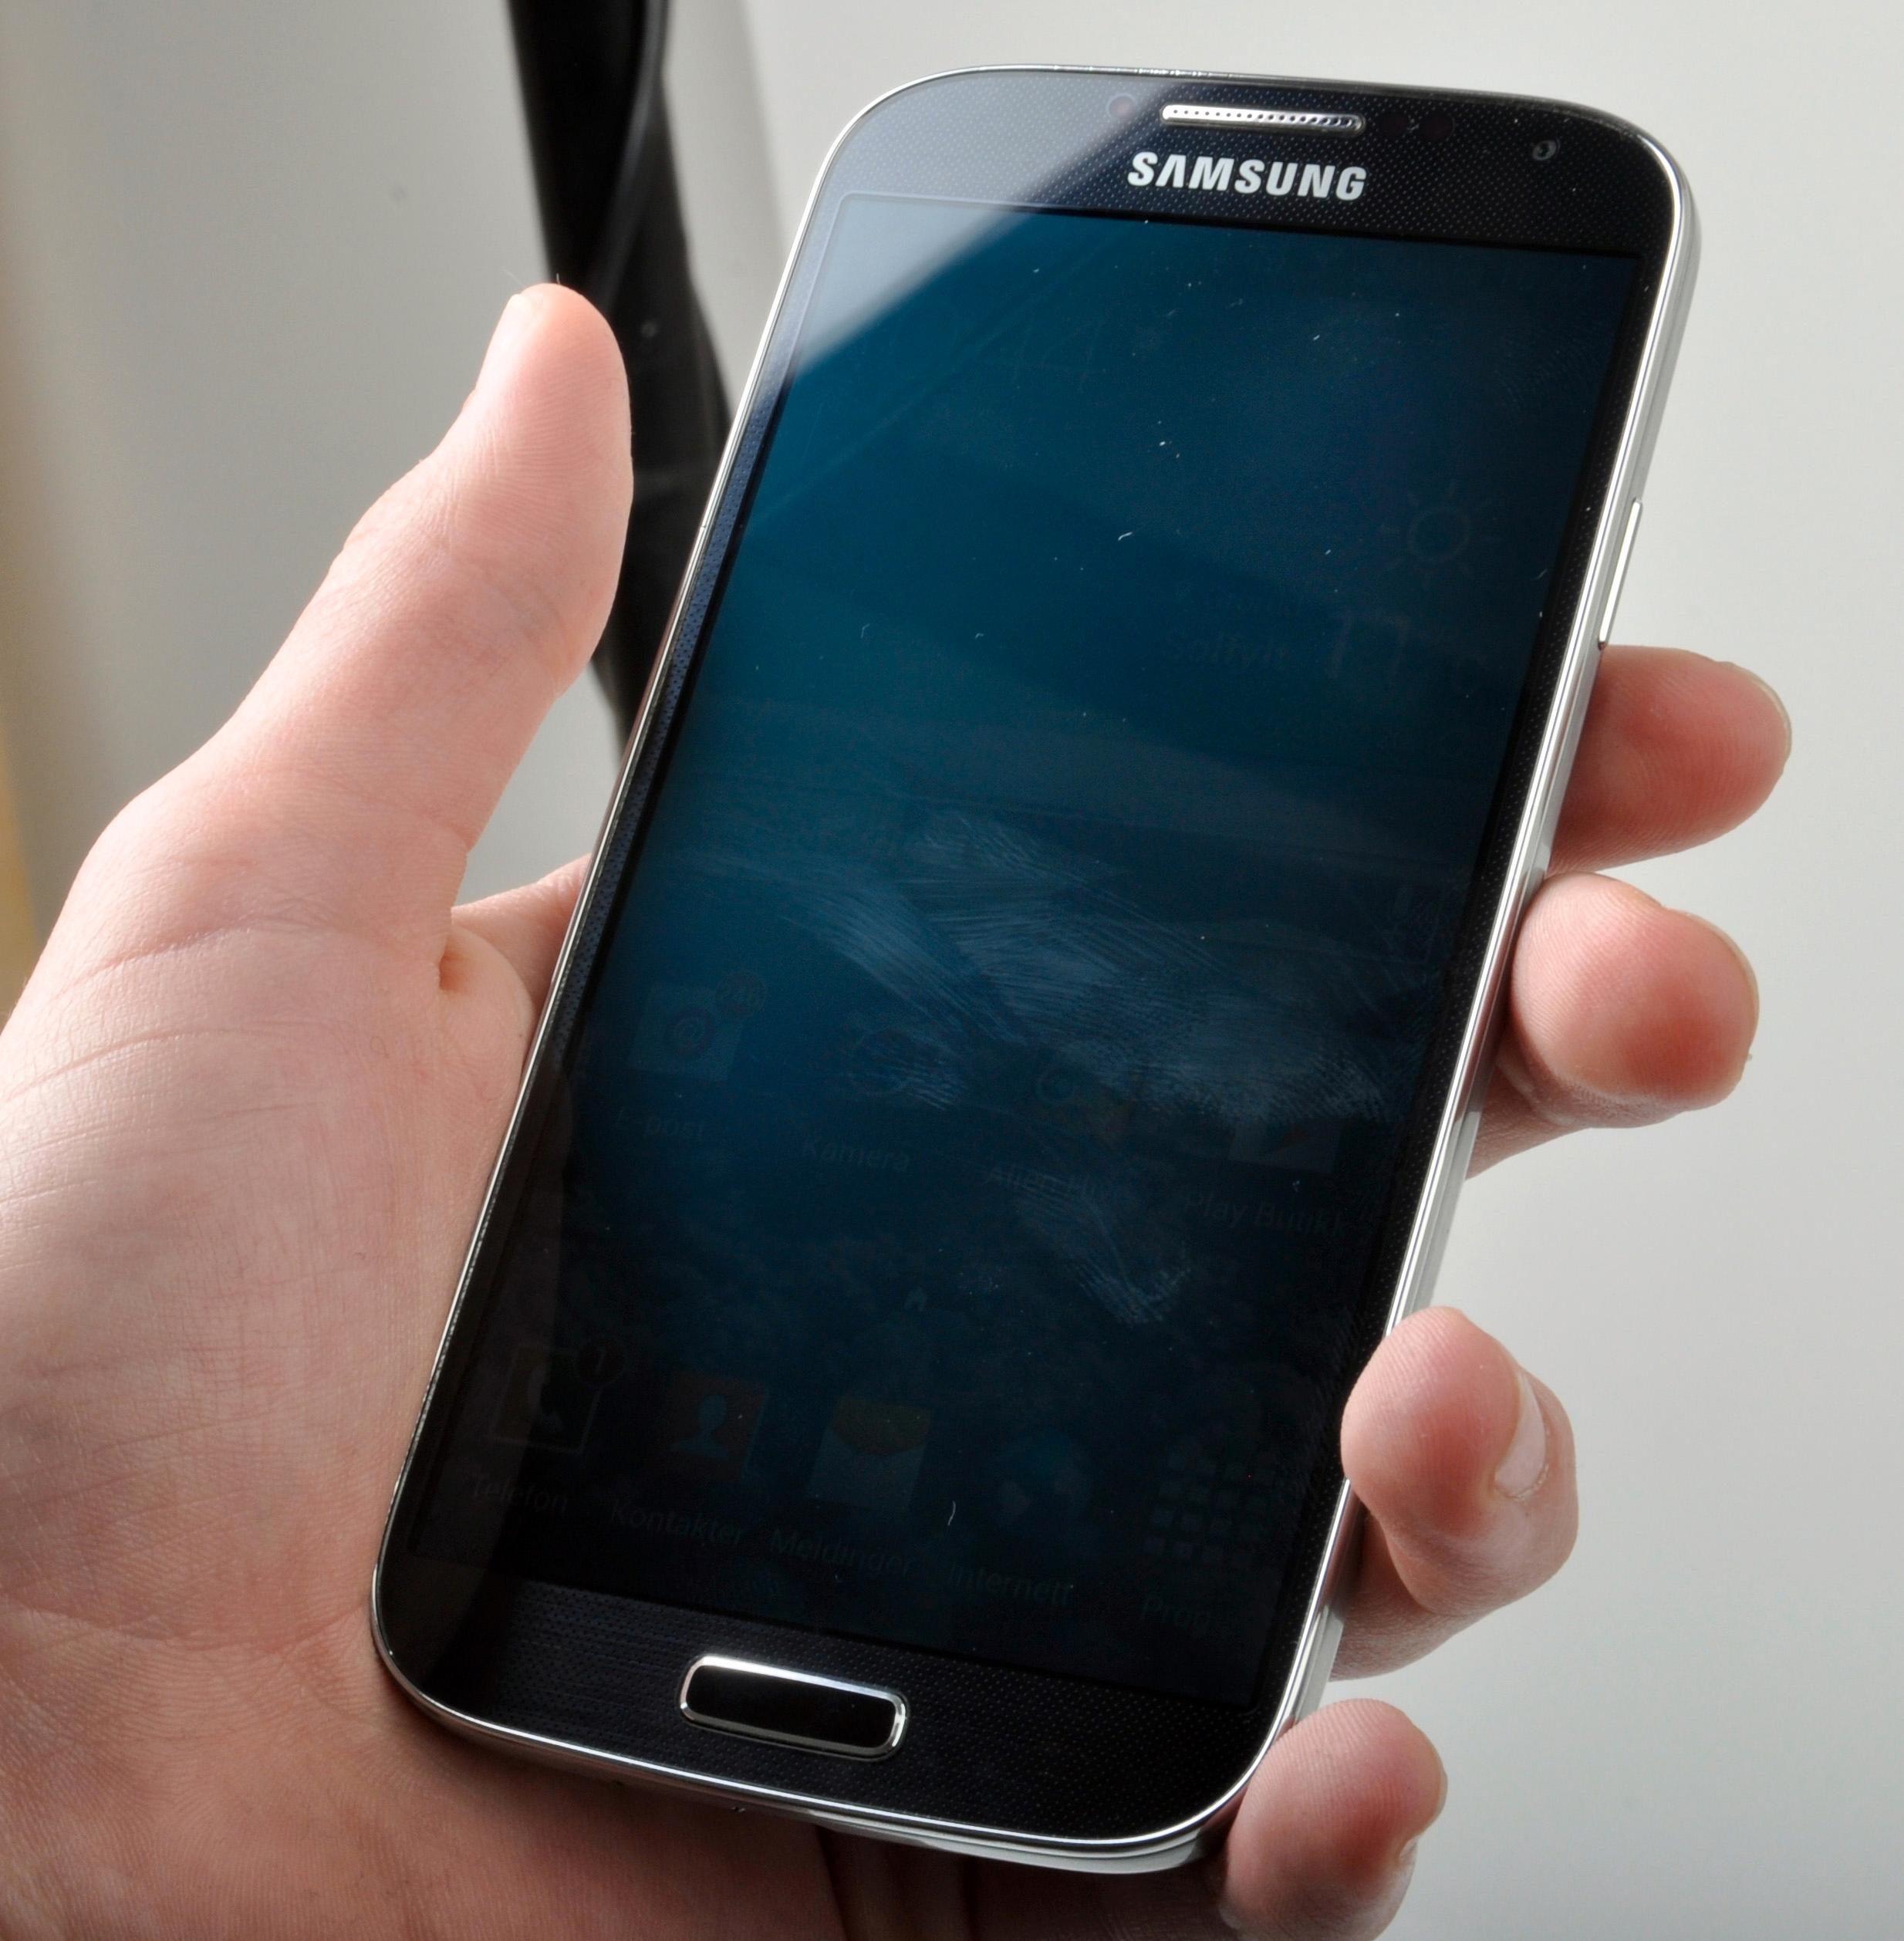 Galaxy S4 har fått større skjerm, uten at telefonen har blitt større. Dermed ligger også nyeste Galaxy S ganske godt i hånden.Foto: Sander Dyrop, Amobil.no